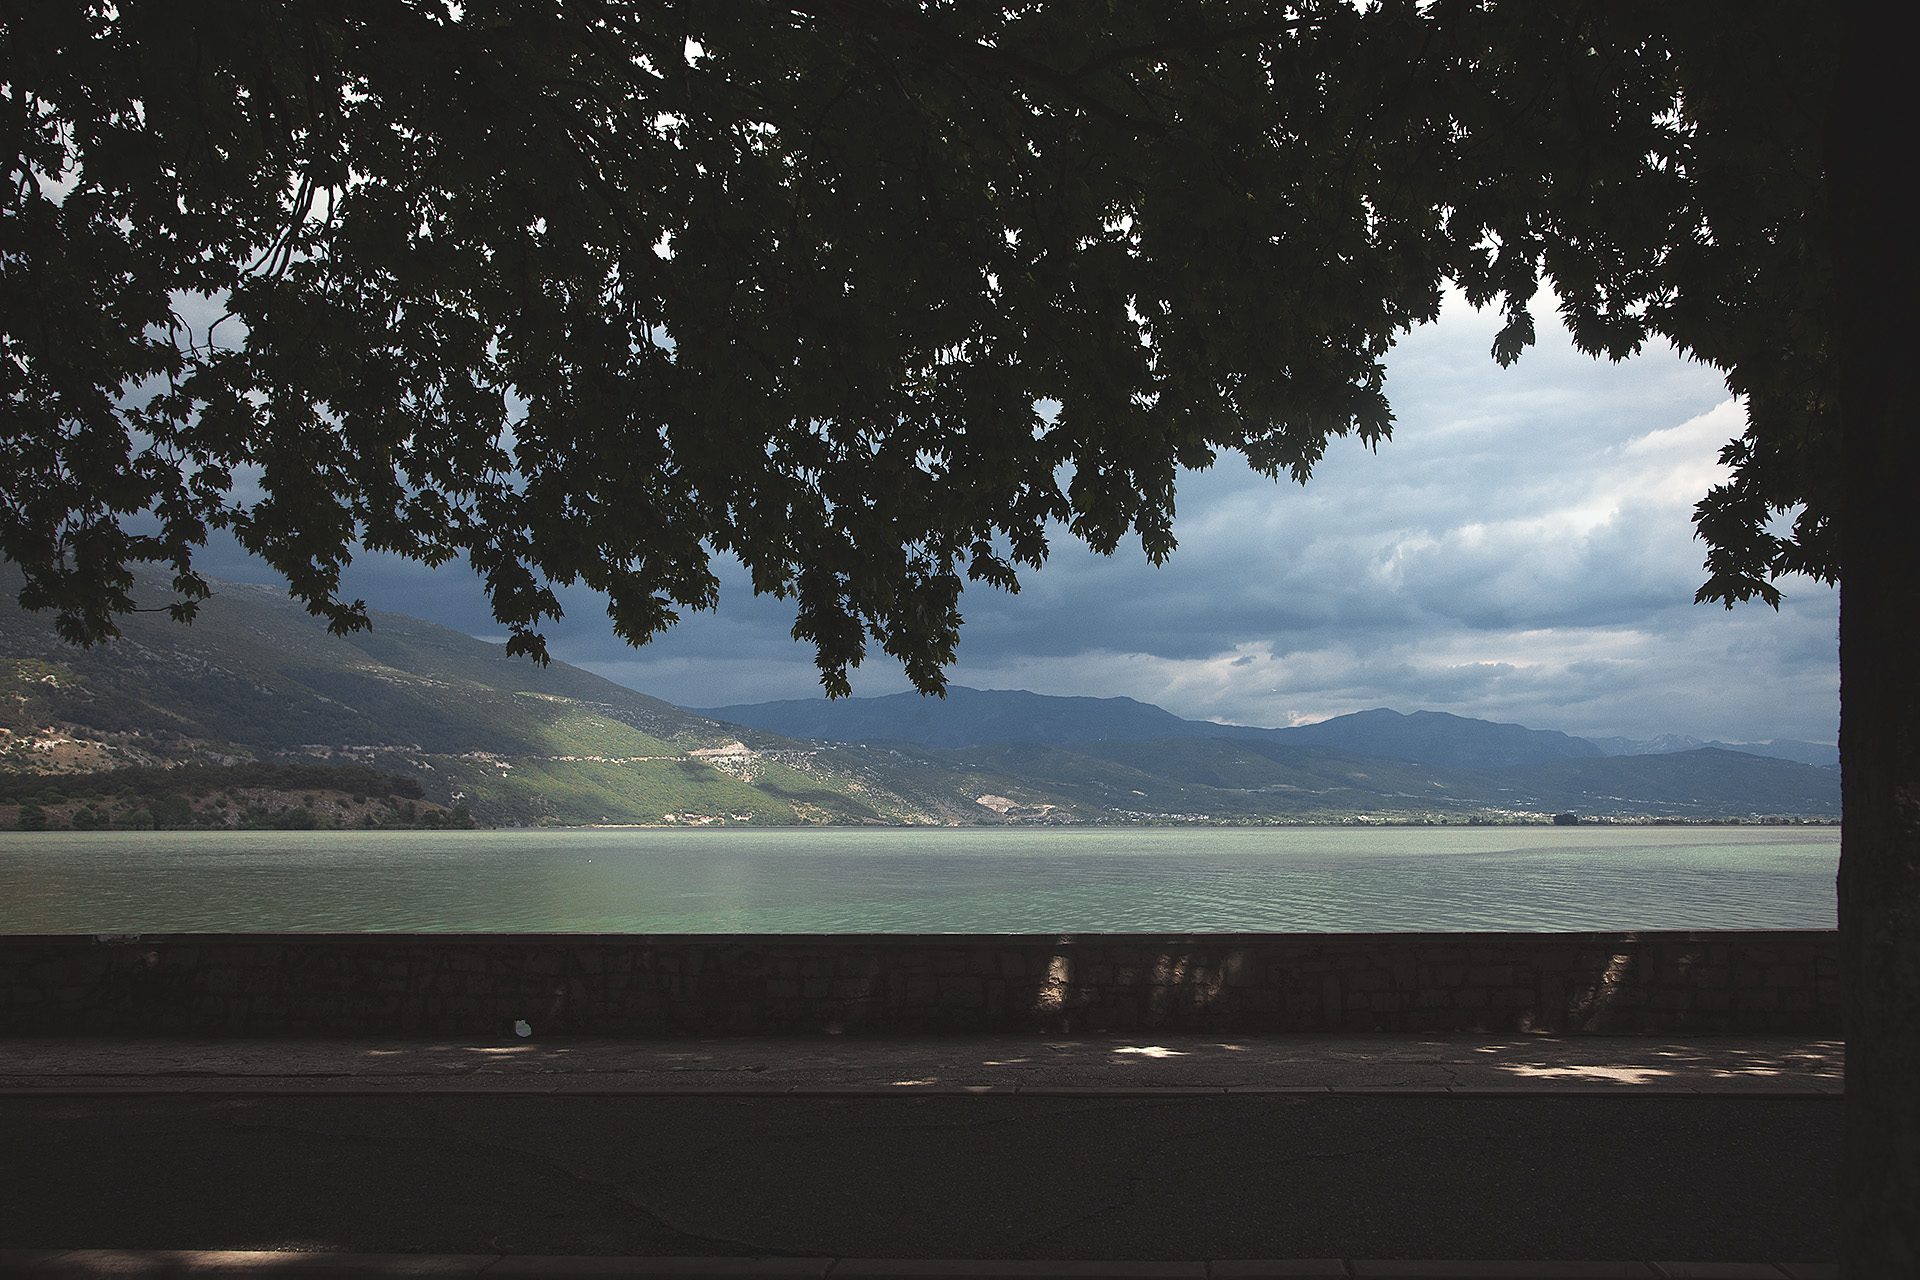 Lake of Ioannina